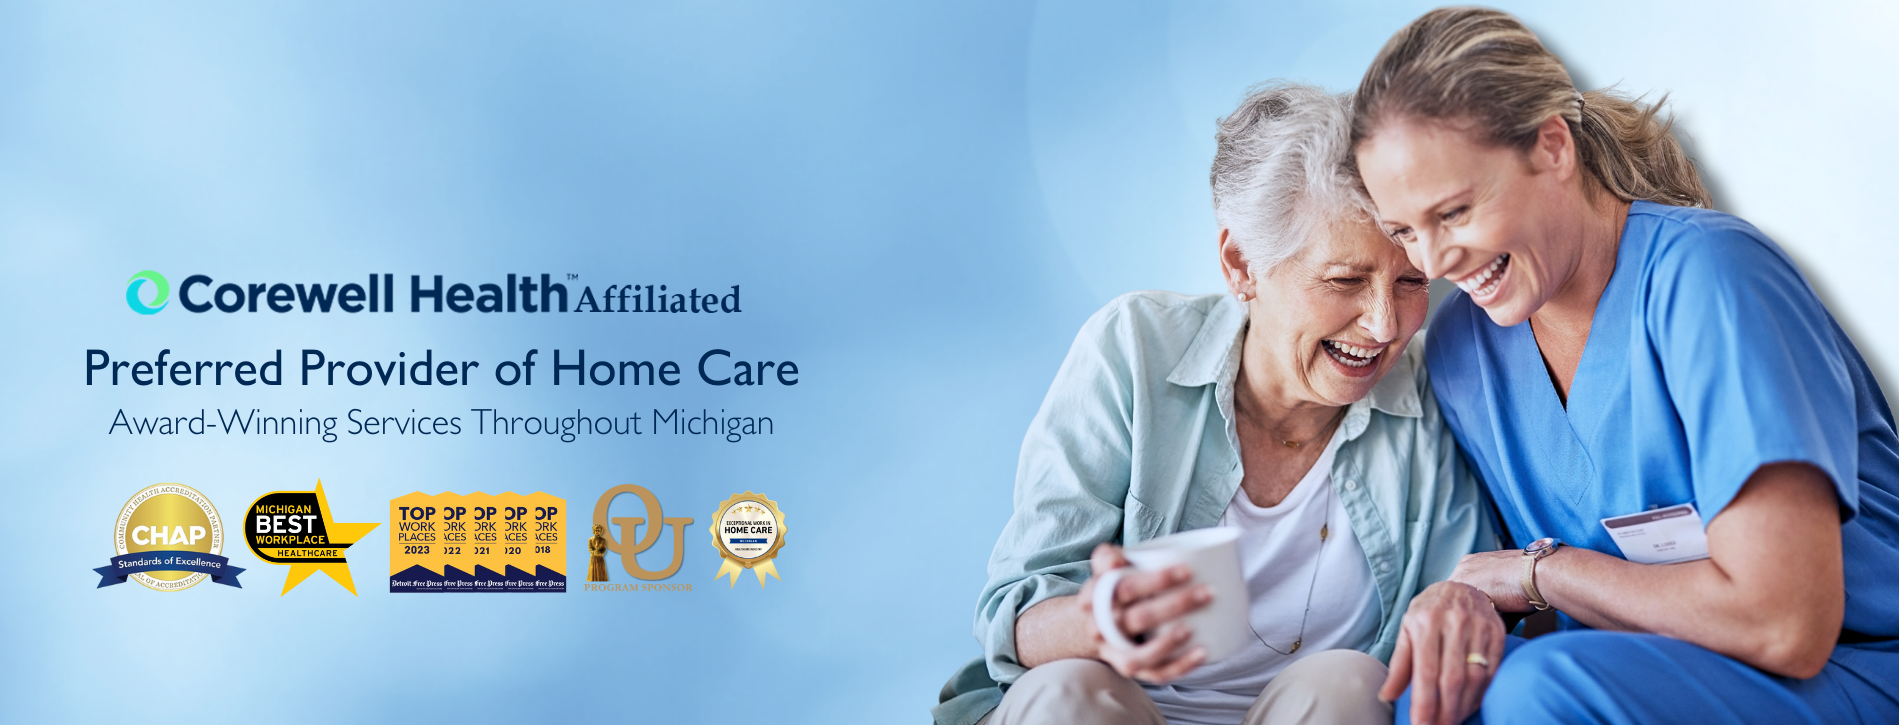 Corewell Health Preferred Provider of Home Care